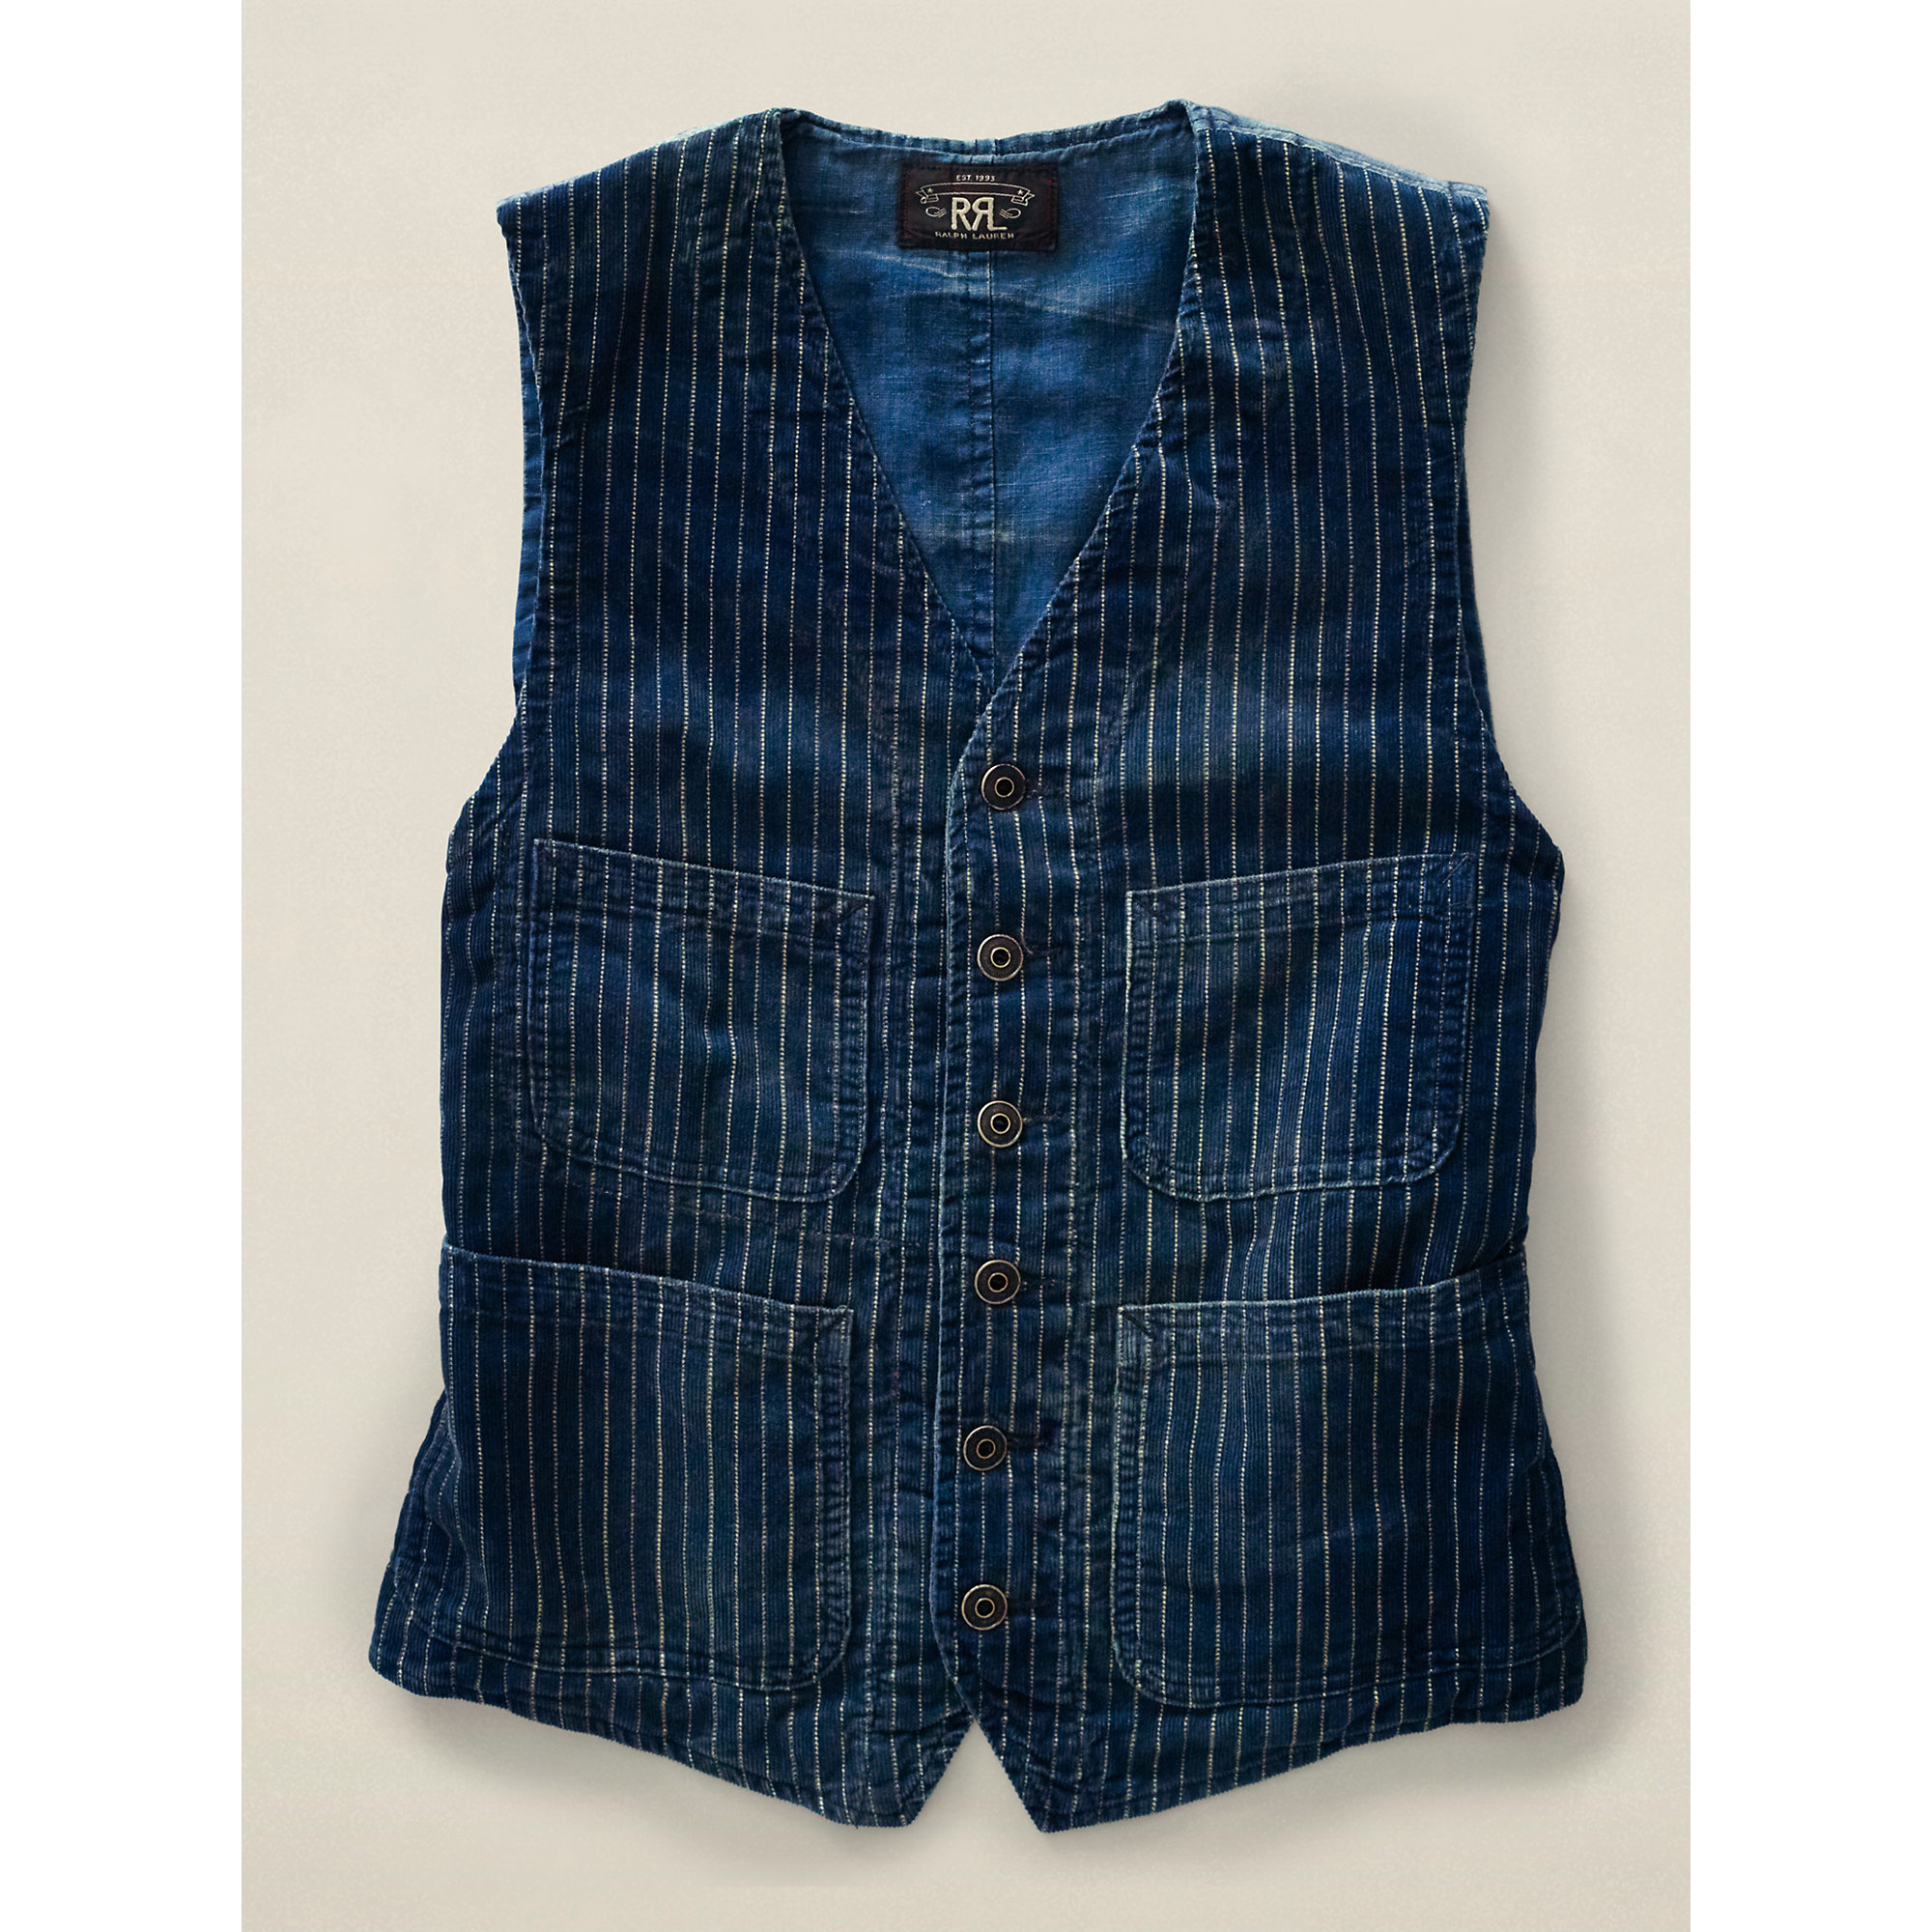 Lyst - Rrl Baldwin Striped Corduroy Vest in Blue for Men